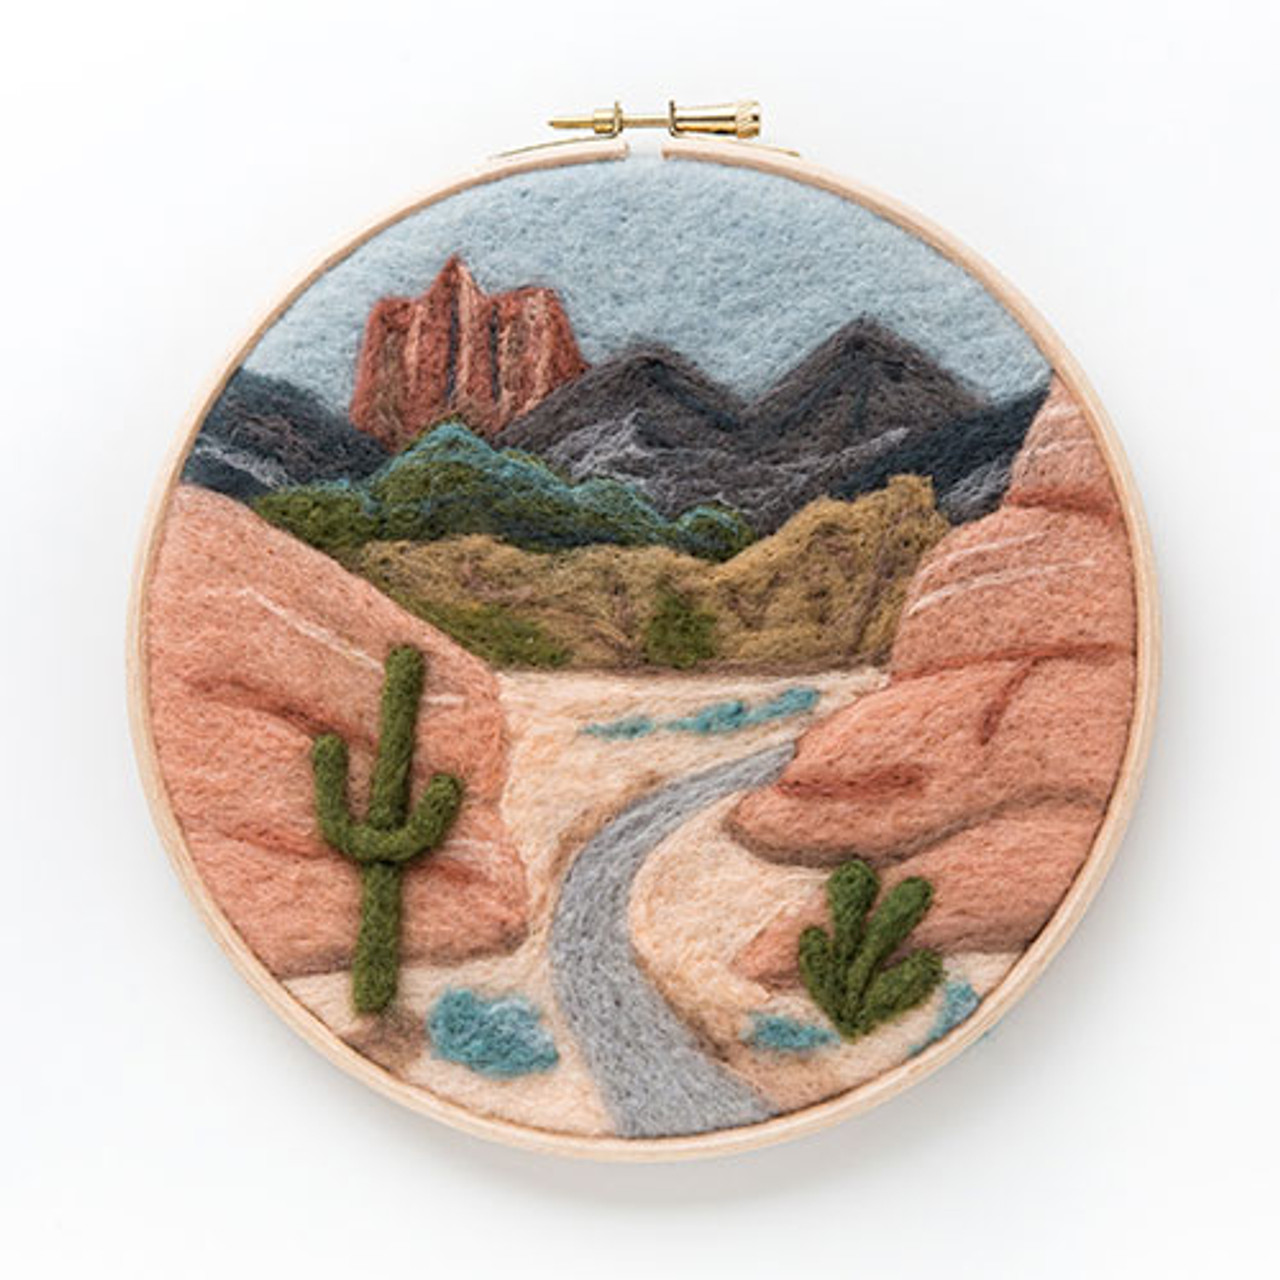 Punch Needle Kit - Desert Dunes – Figured'Art